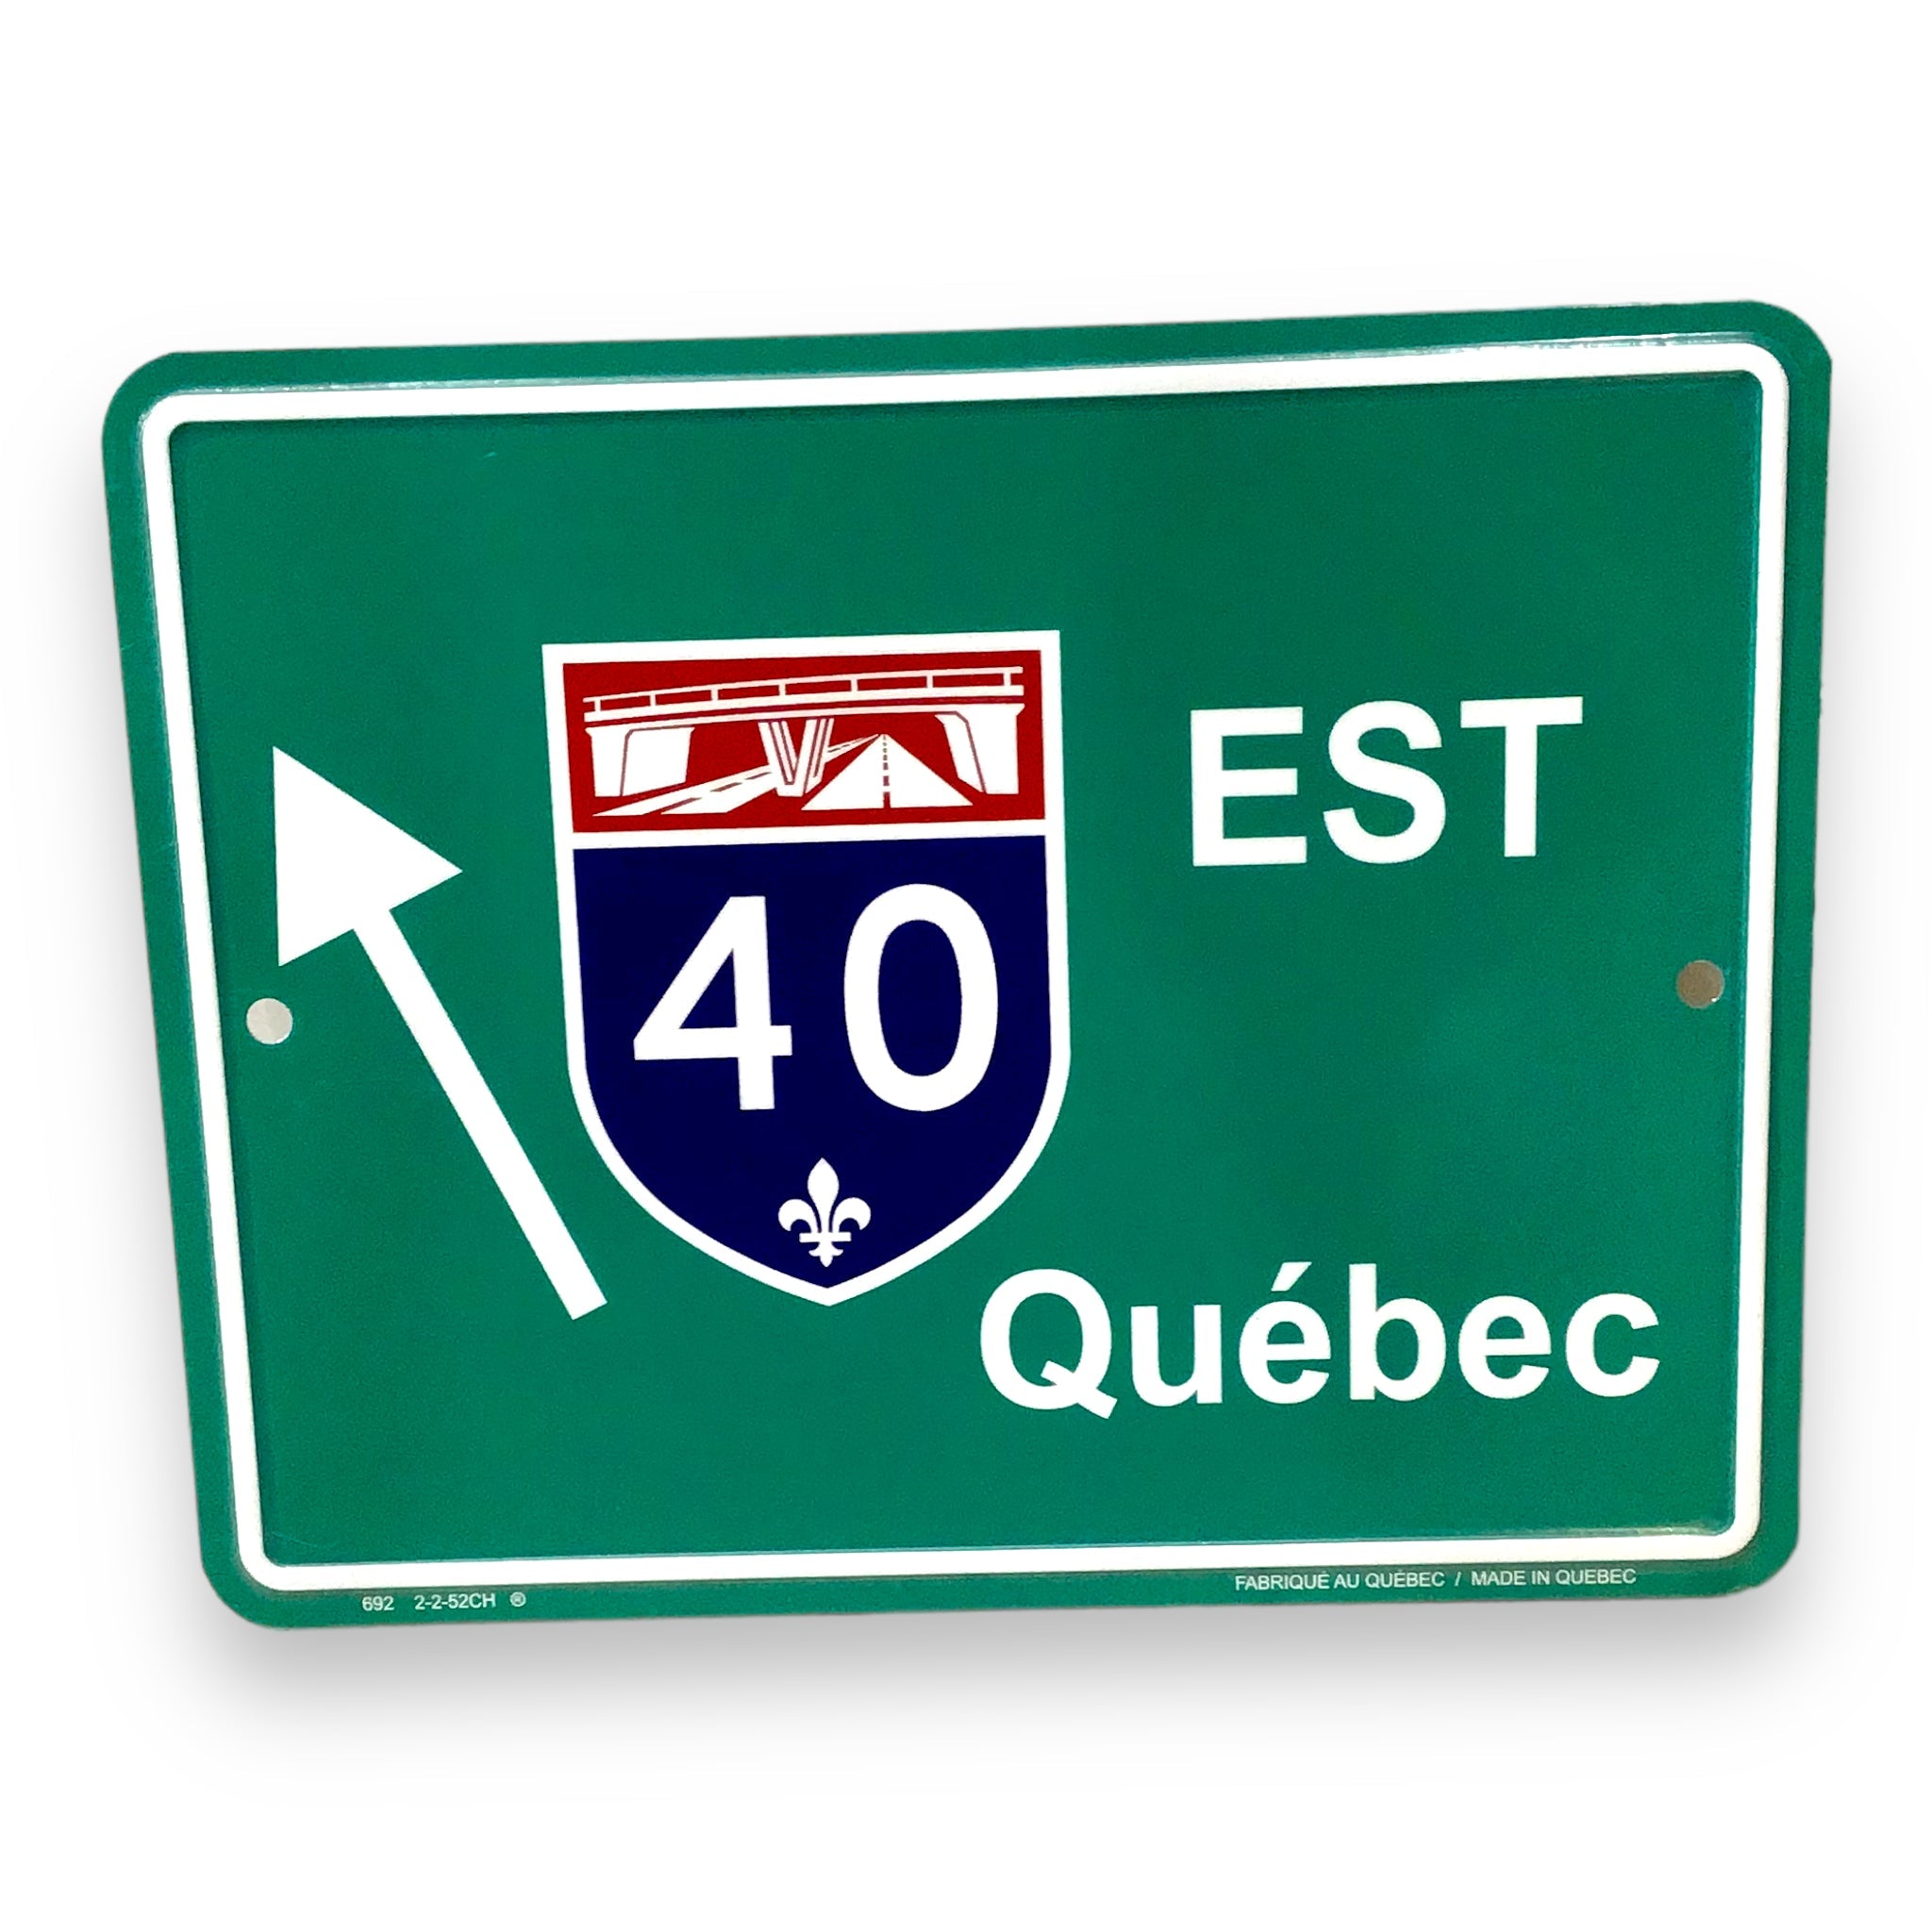 Quebec Route 40 EST Highway Marker Road Sign 9 x7 Souvenir Collection Plaque